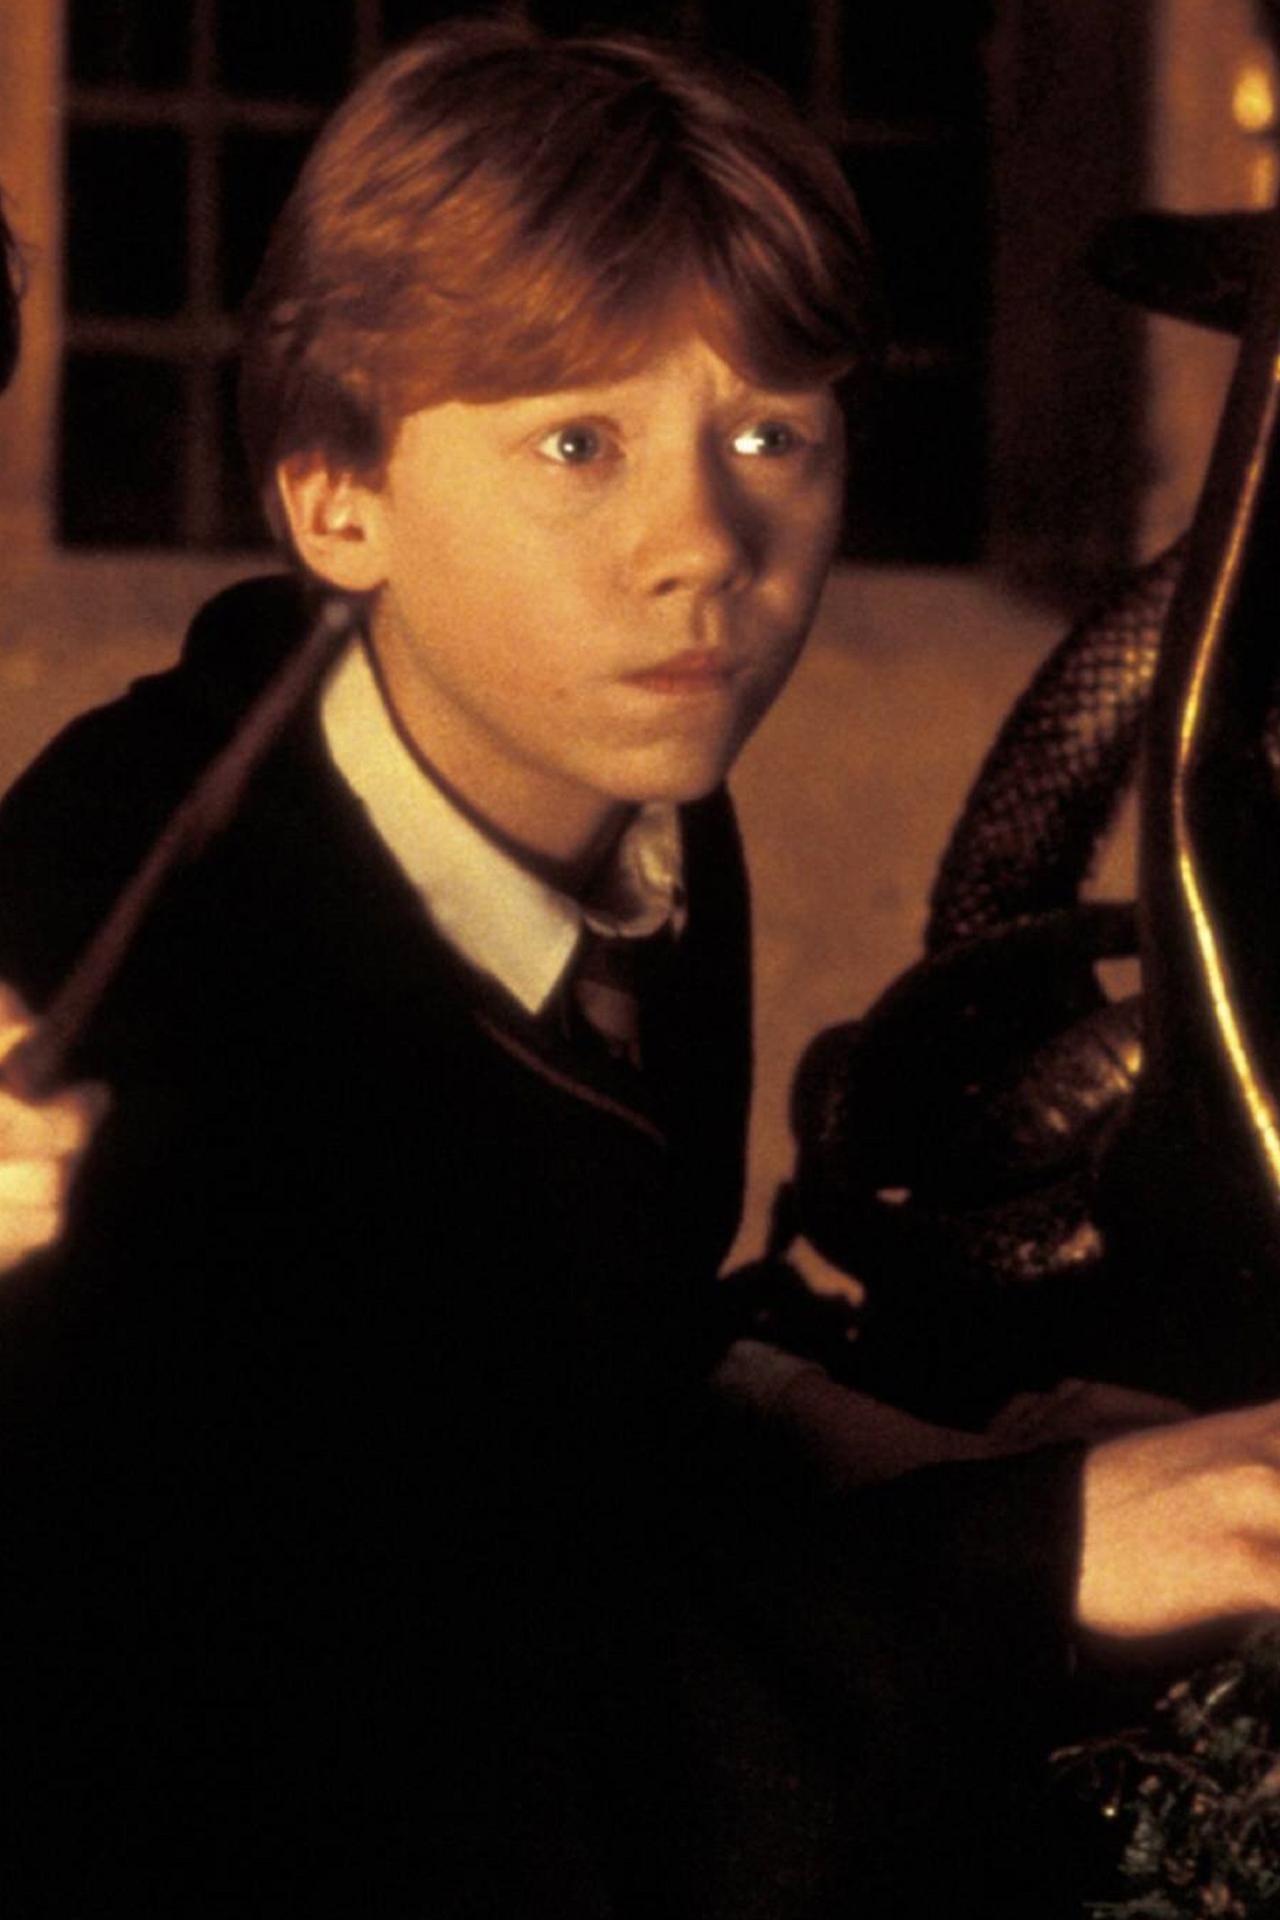 Ron Weasley gespielt von Rupert Grint: Der beste Freund von Harry Potter war zum Start der Zauberreihe dreizehn Jahre alt.